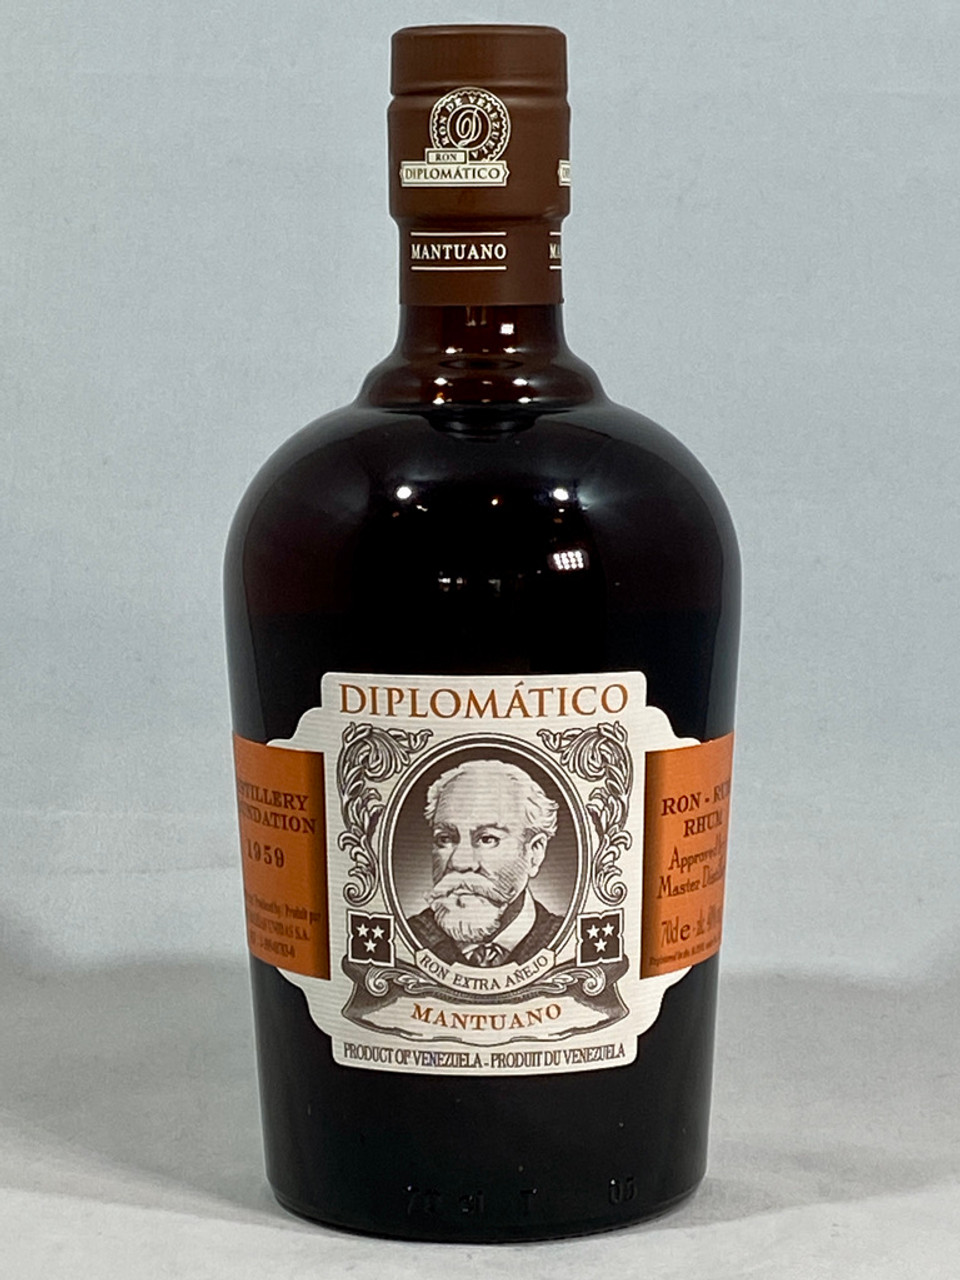 Diplomatico Mantuano Rum, Venezuelan Rum